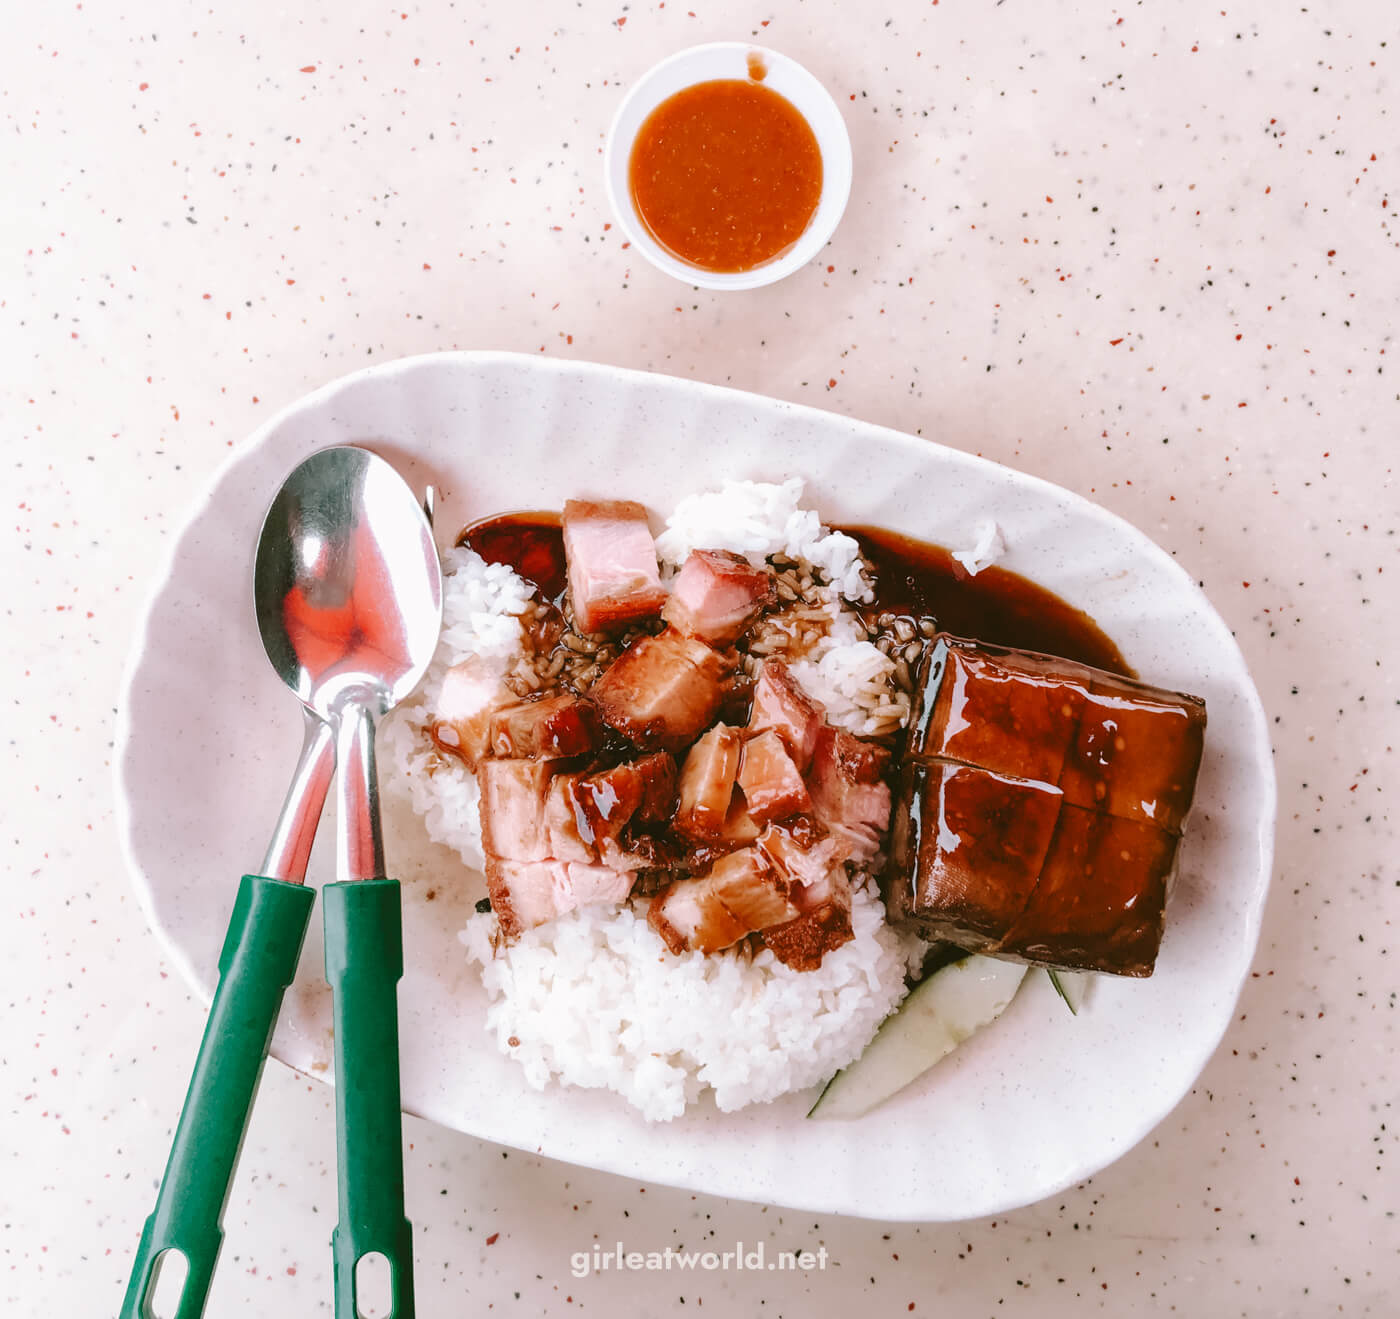 Singapore Food - Roast Meat Rice